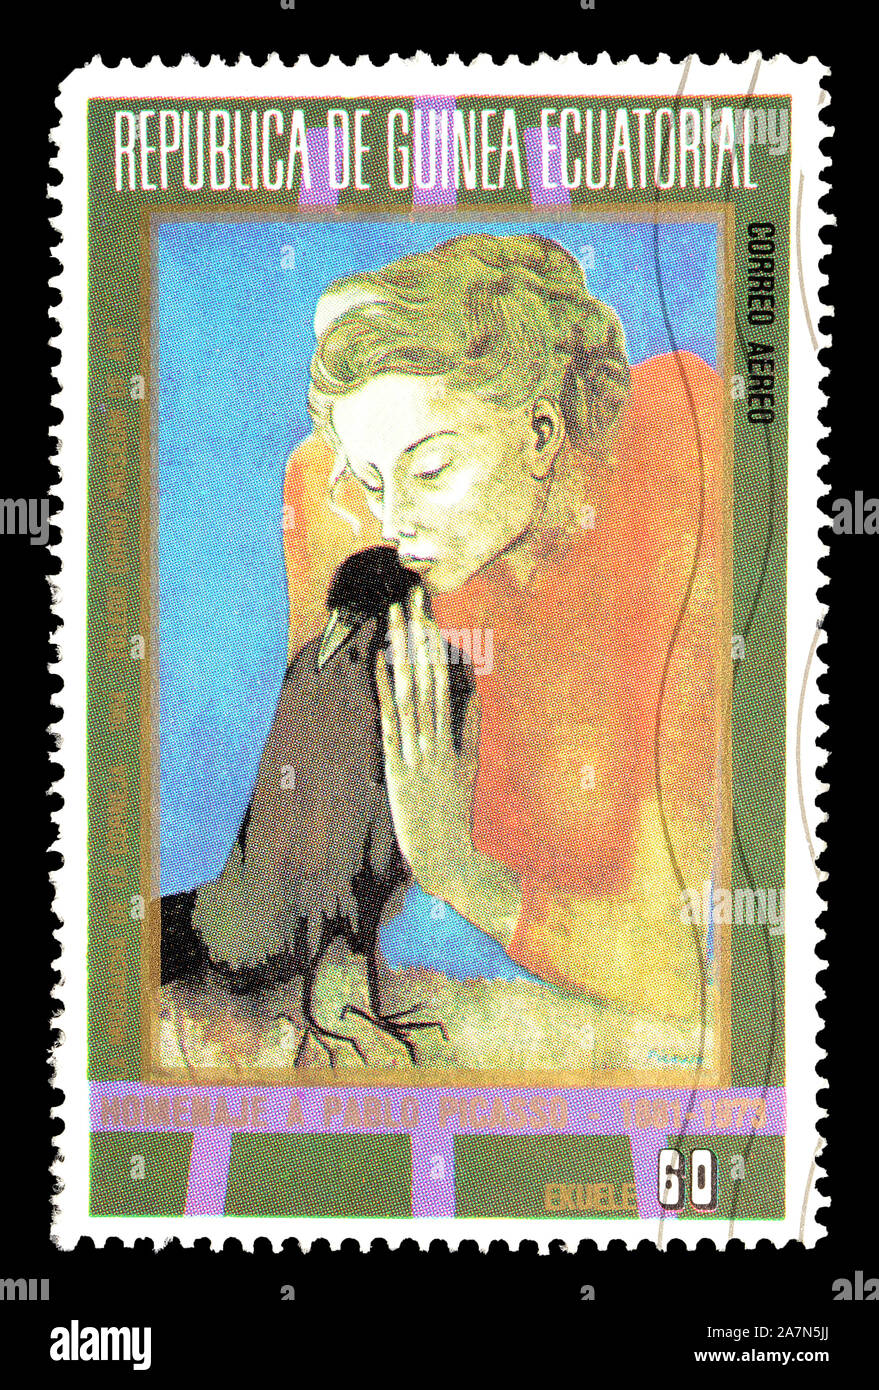 Timbre-poste imprimé par la Guinée équatoriale, qui montre des peintures de la période bleue de Picasso, vers 1973. Banque D'Images